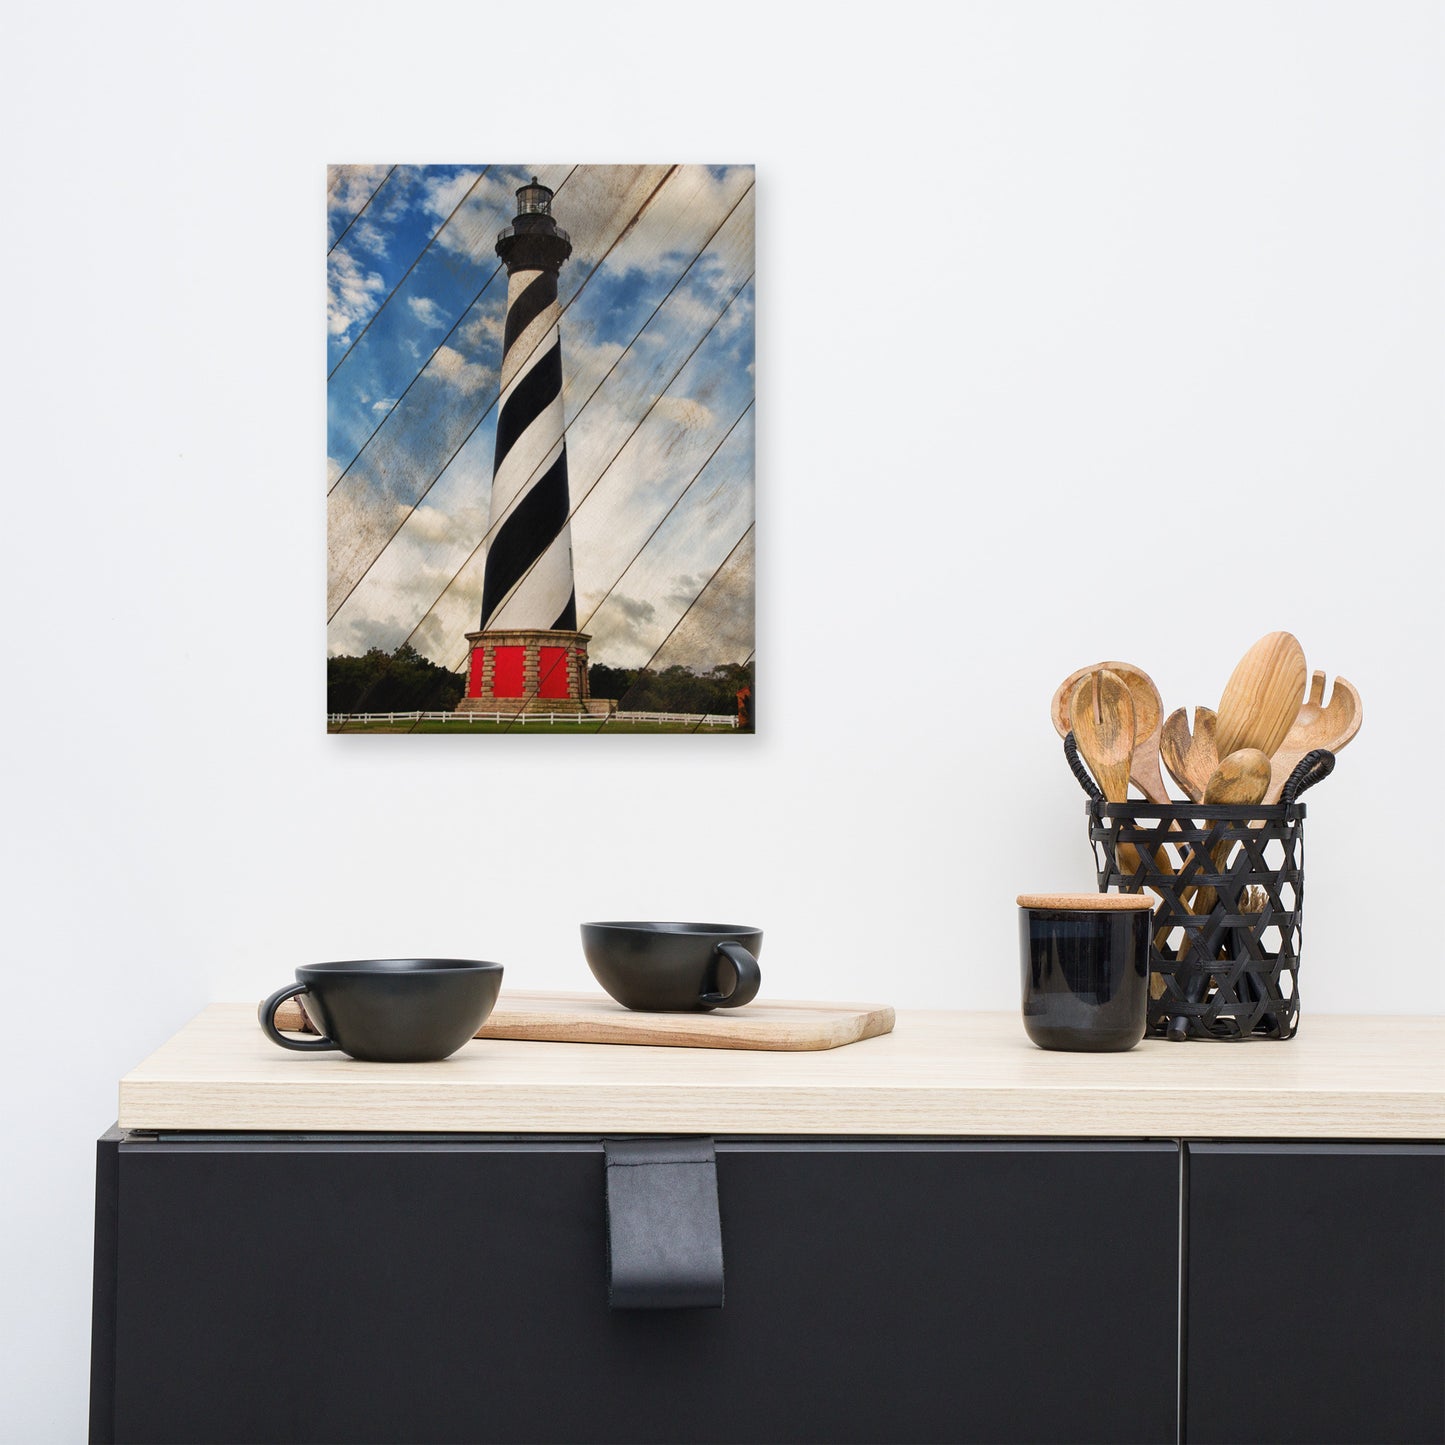 Cape Hatteras Lighthouse Landscape Photo Faux Wood Panels Canvas Wall Art Prints